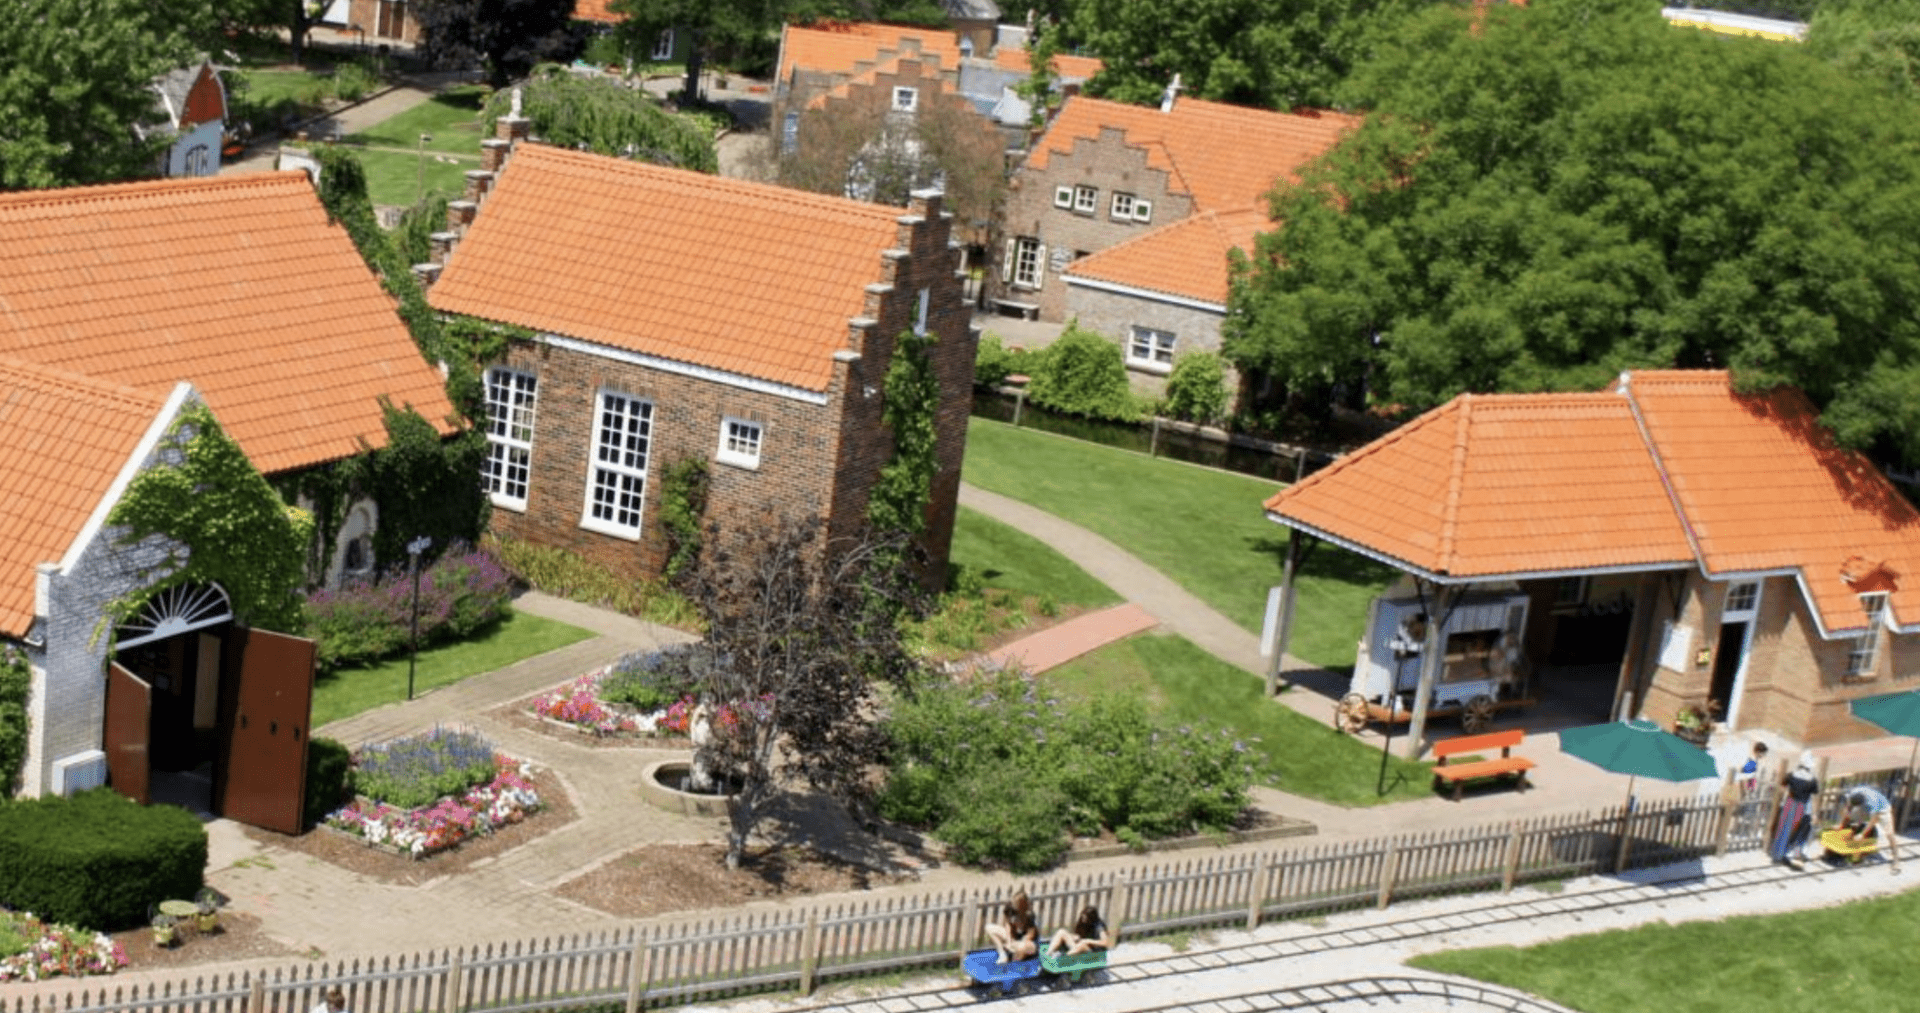 Nelis' Dutch Village in Holland, Mi